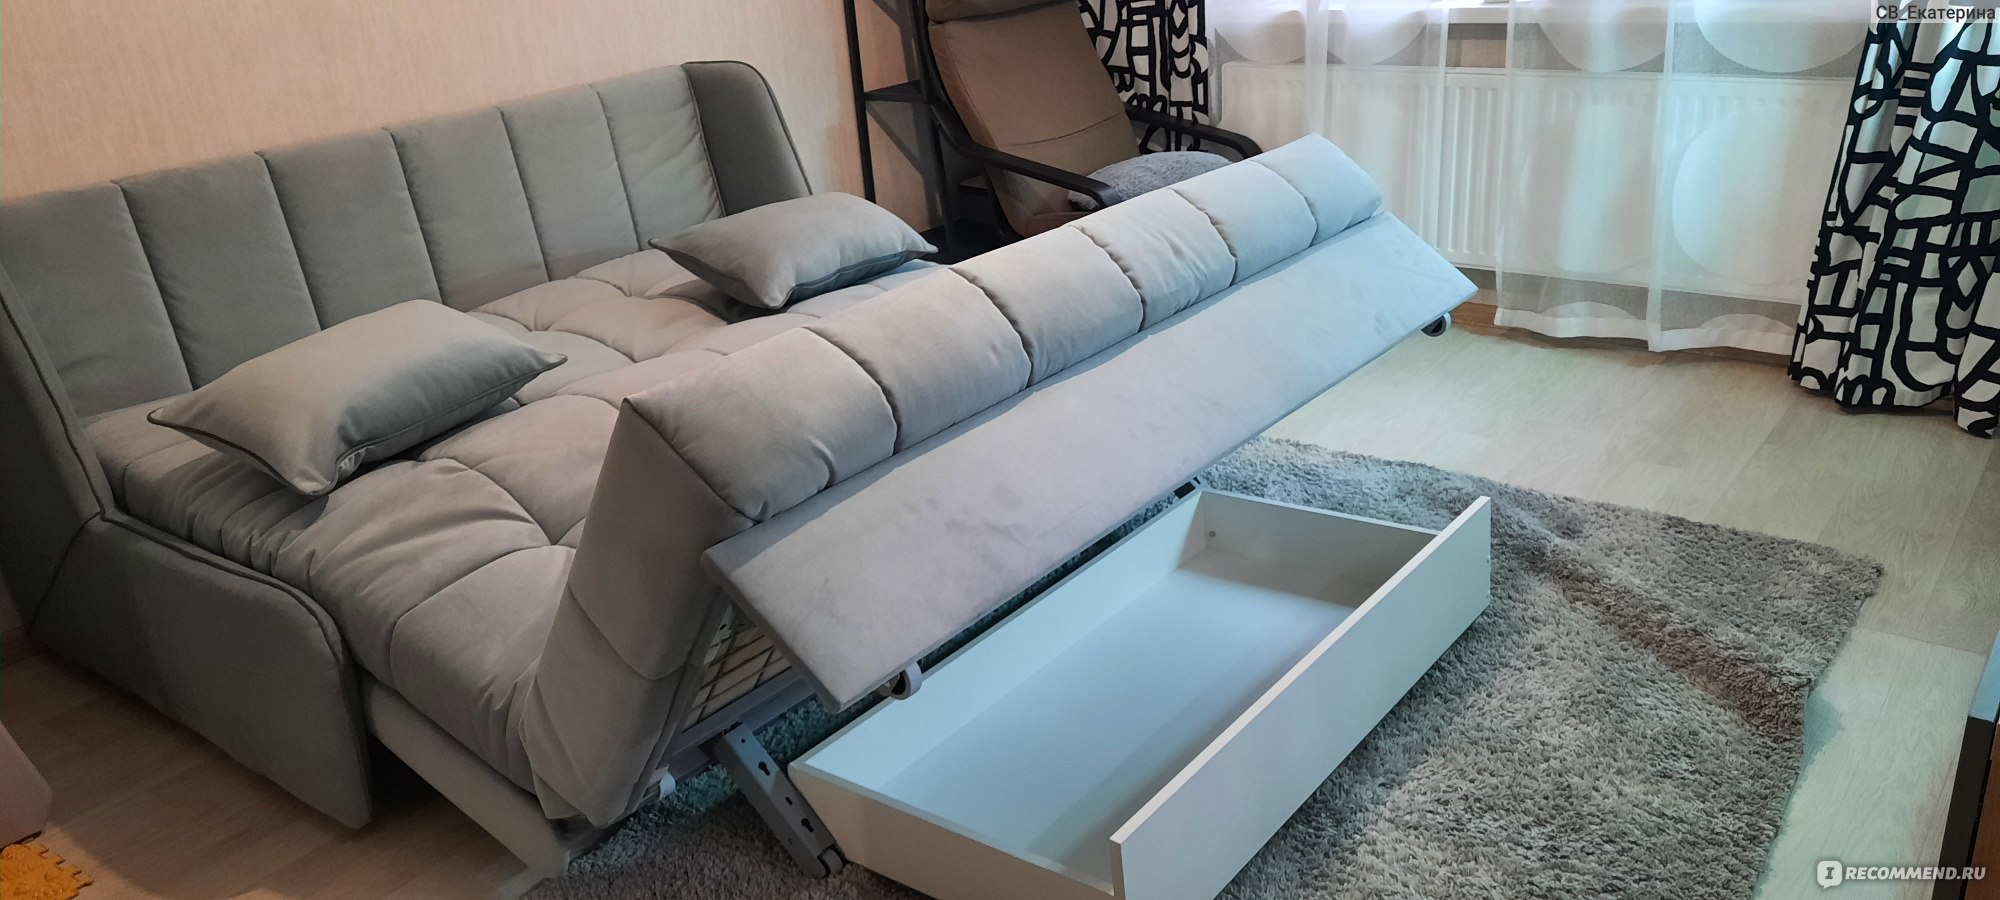 Можно ли старый диван обменять на новый